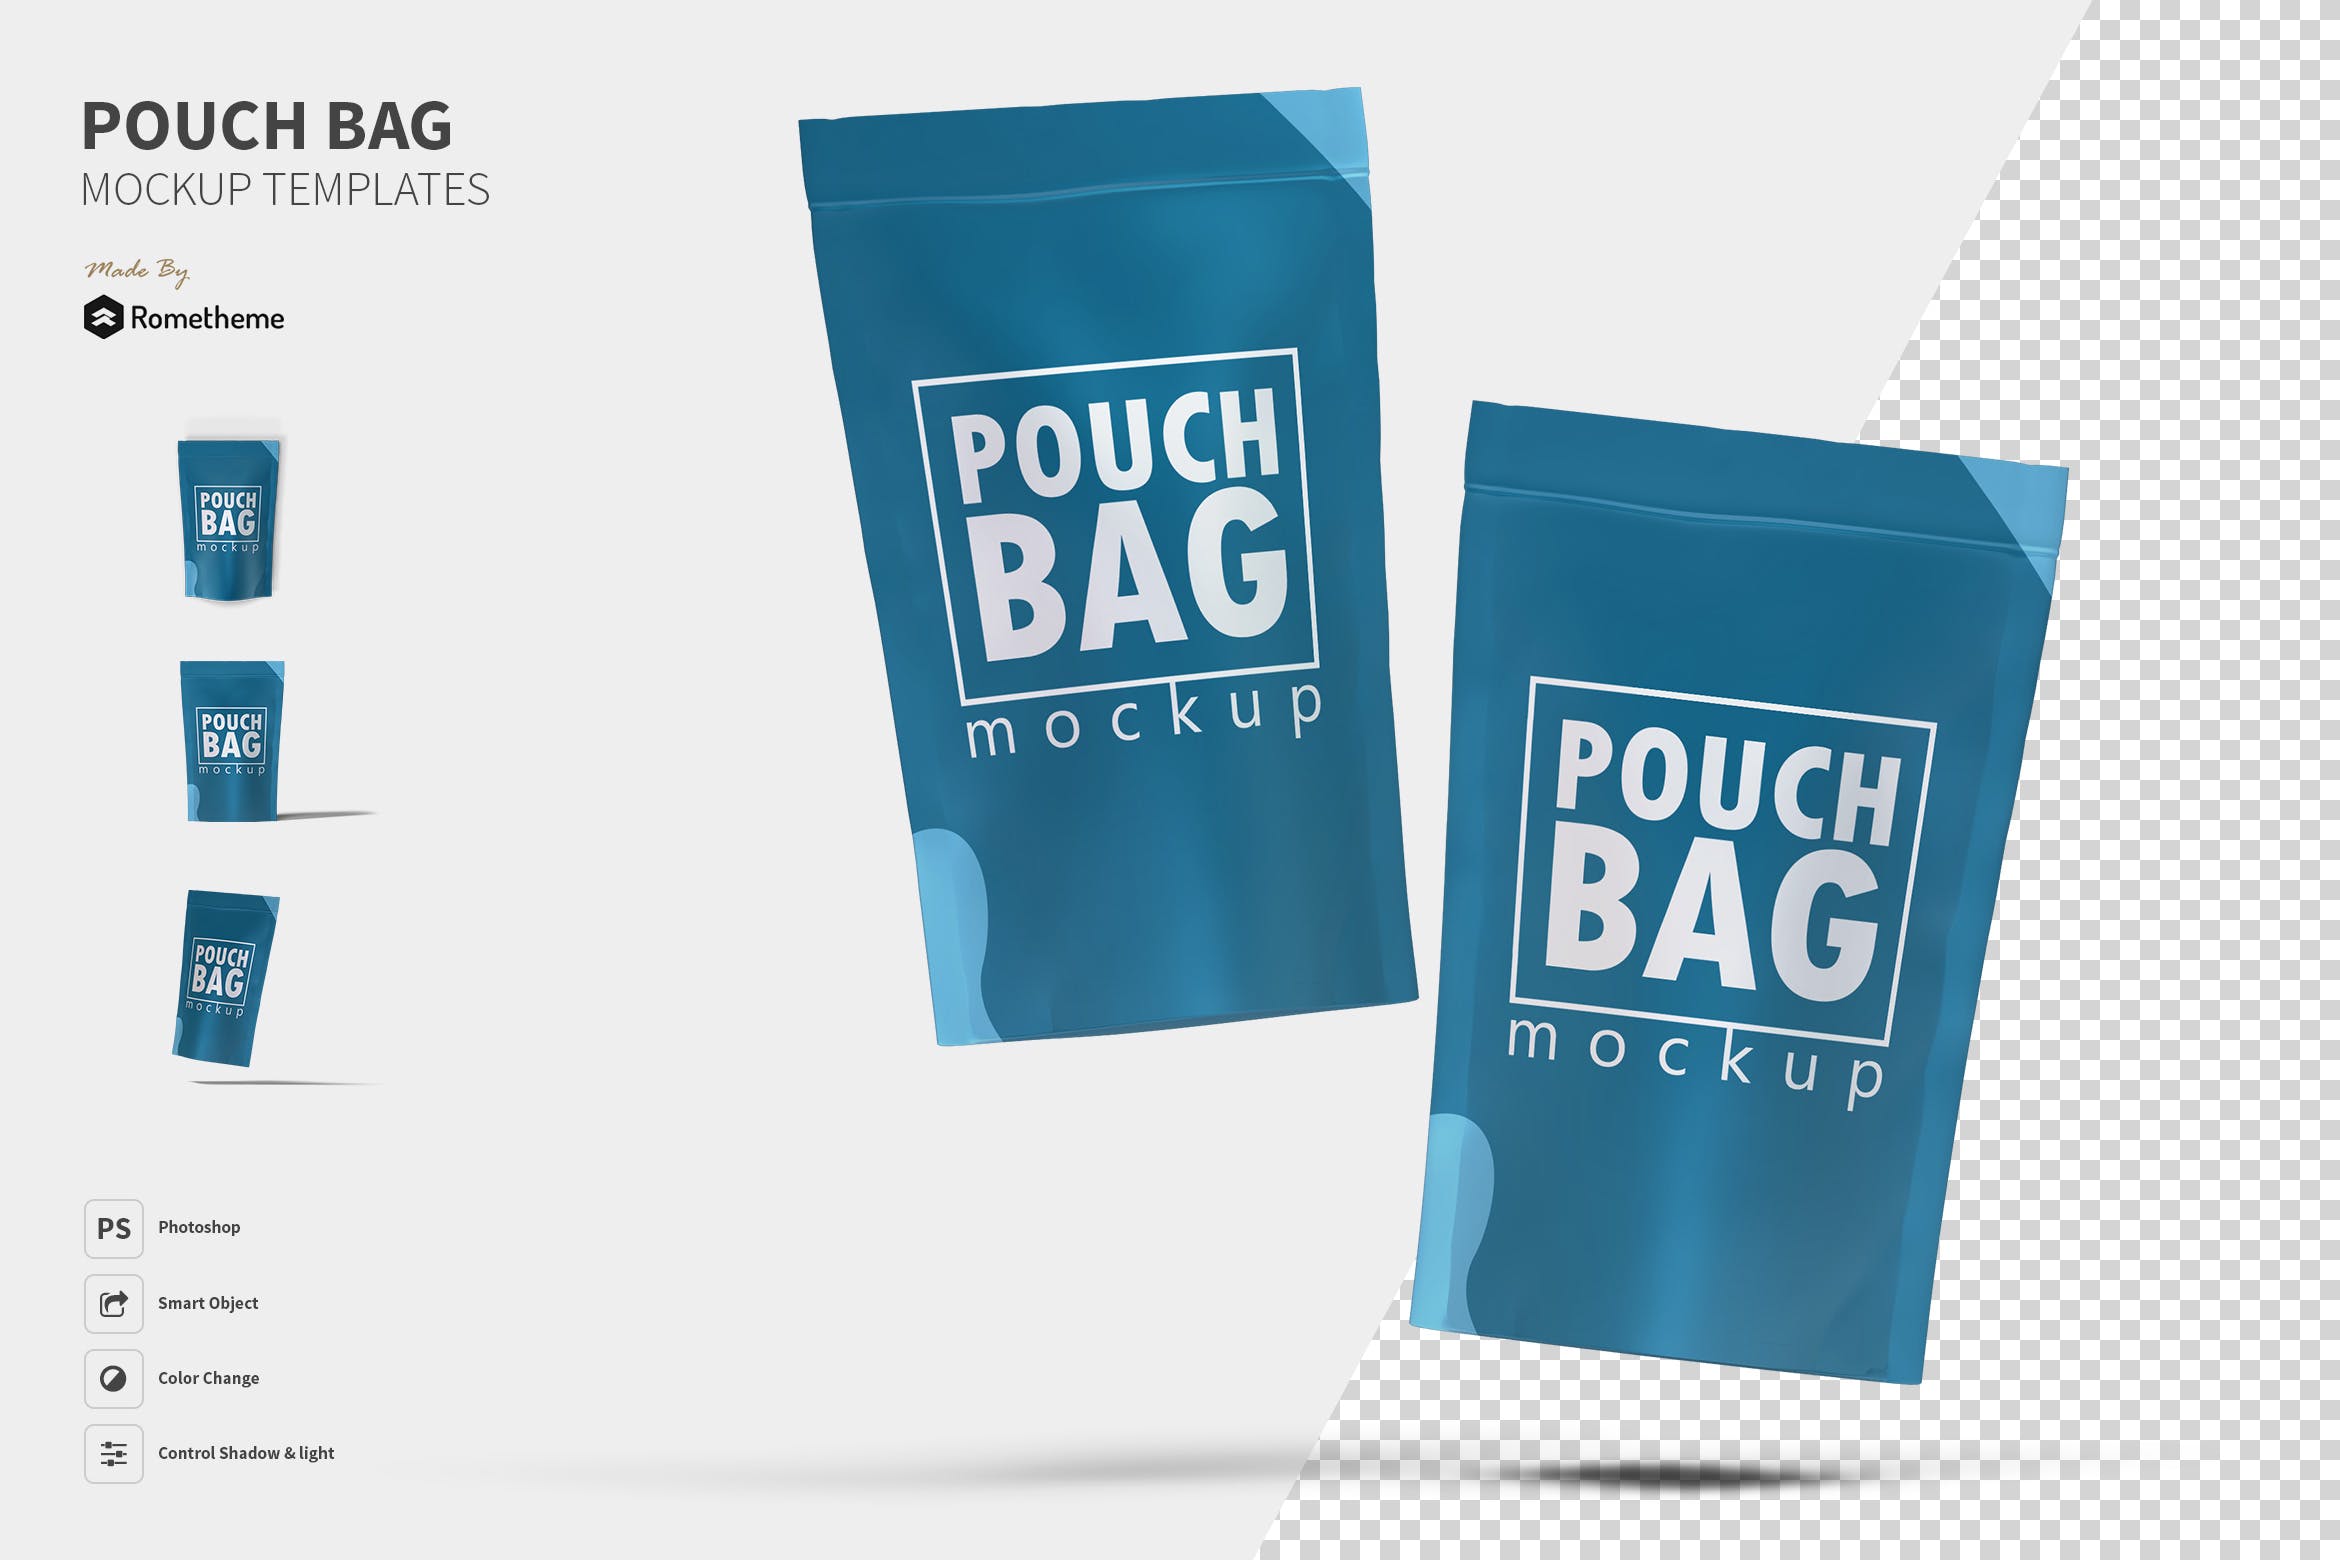 自封袋包装外观设计图第一素材精选 Pouch Bag – Mockup FH插图